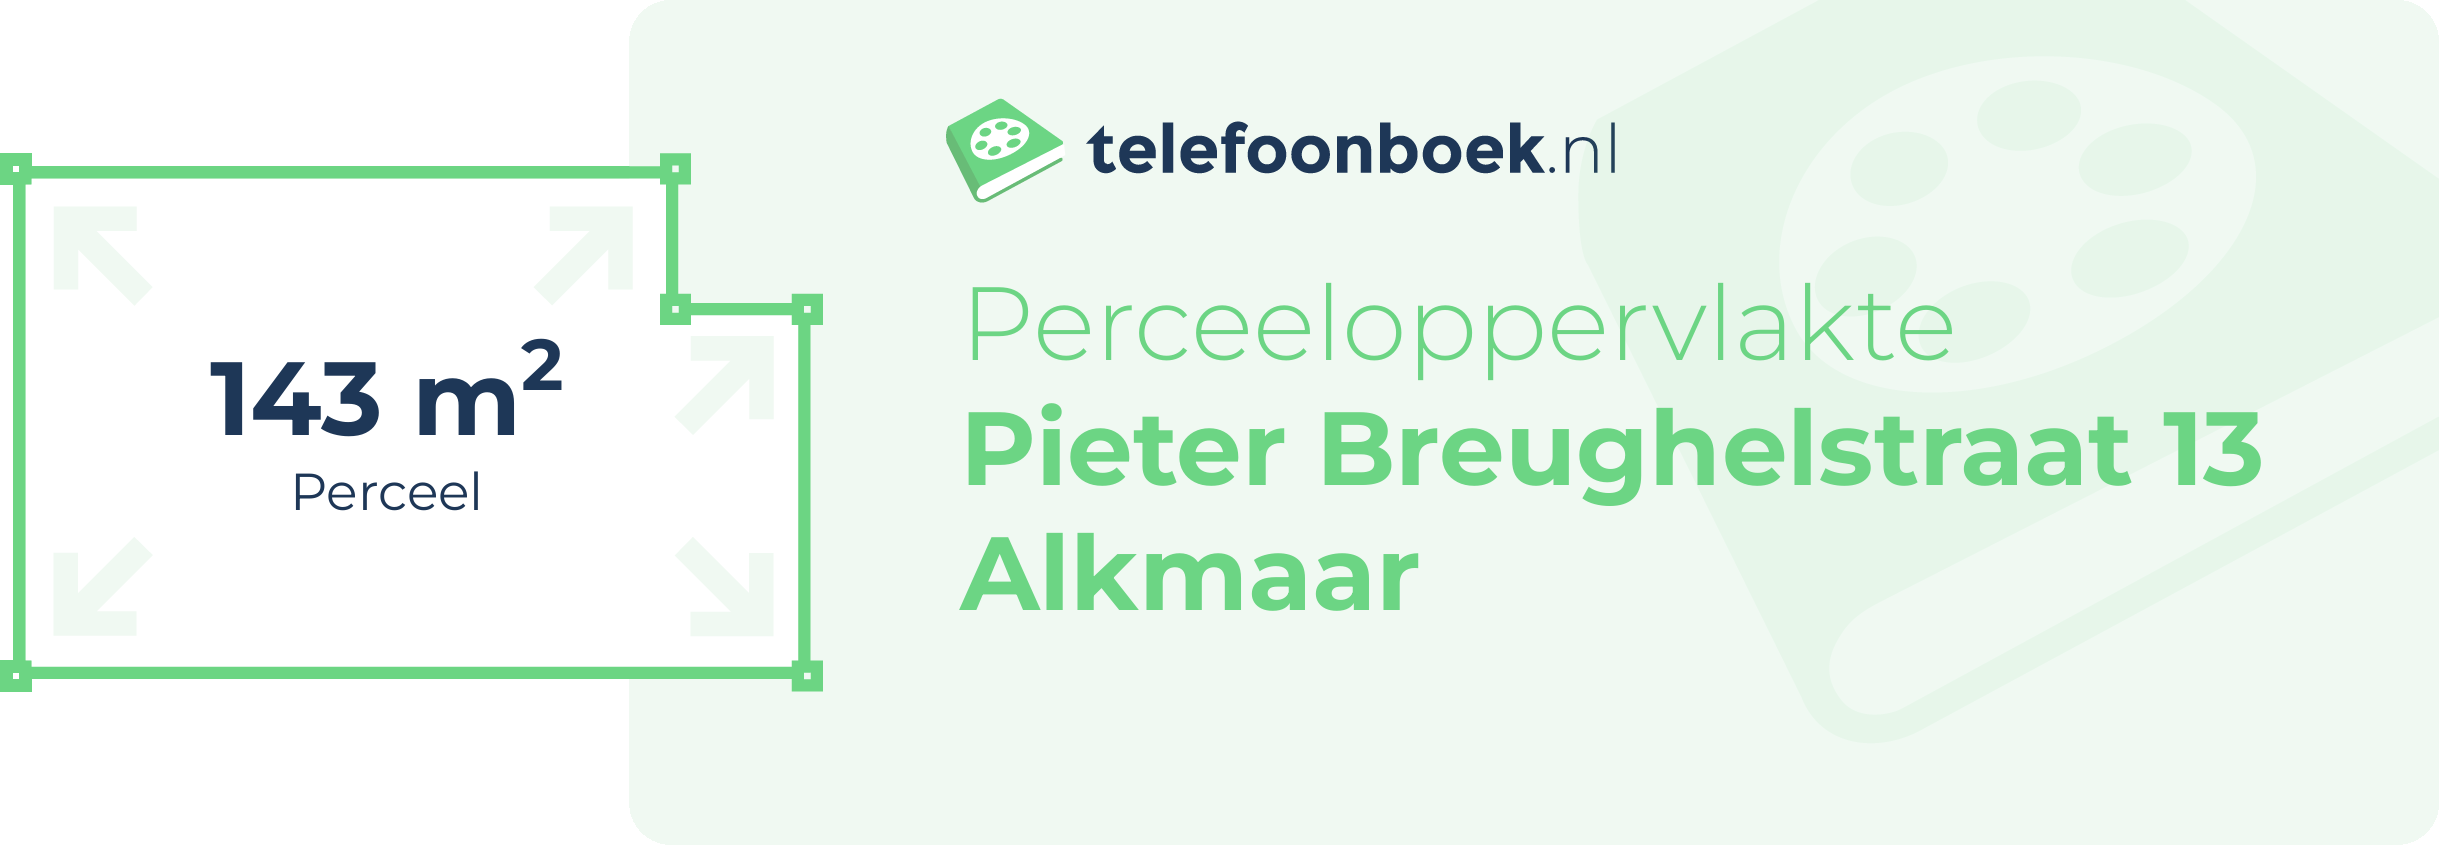 Perceeloppervlakte Pieter Breughelstraat 13 Alkmaar